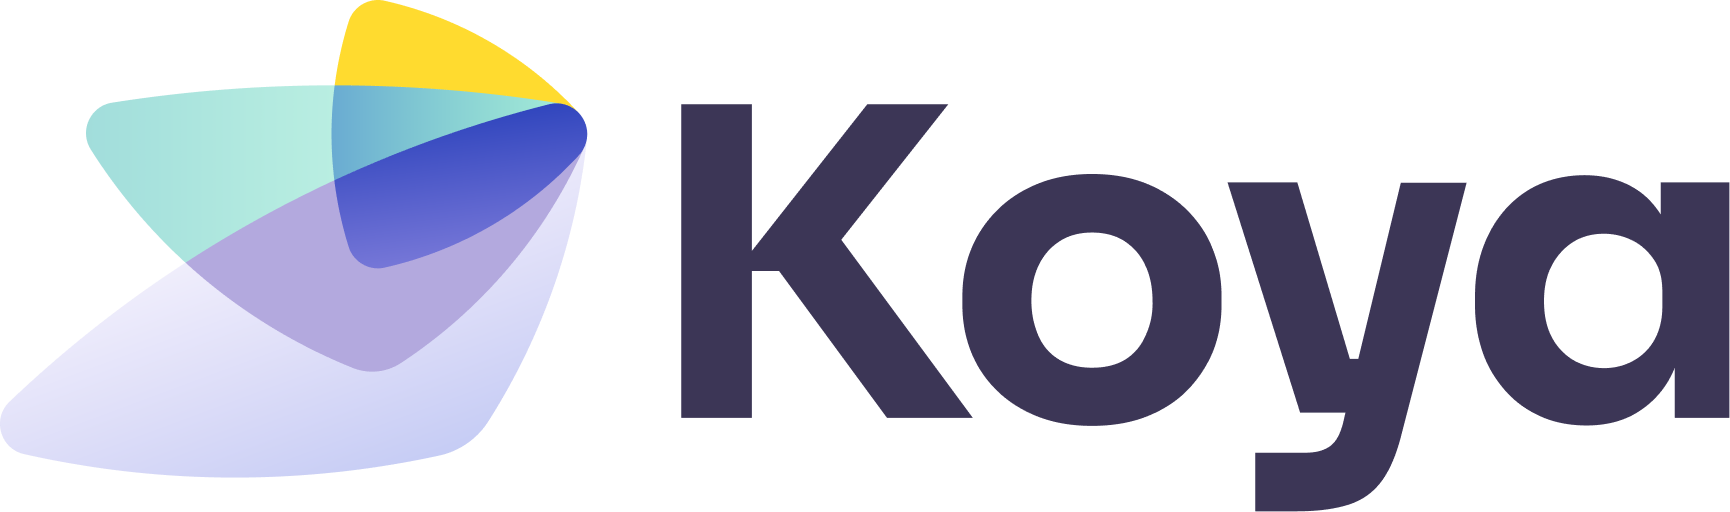 Koya, Inc.